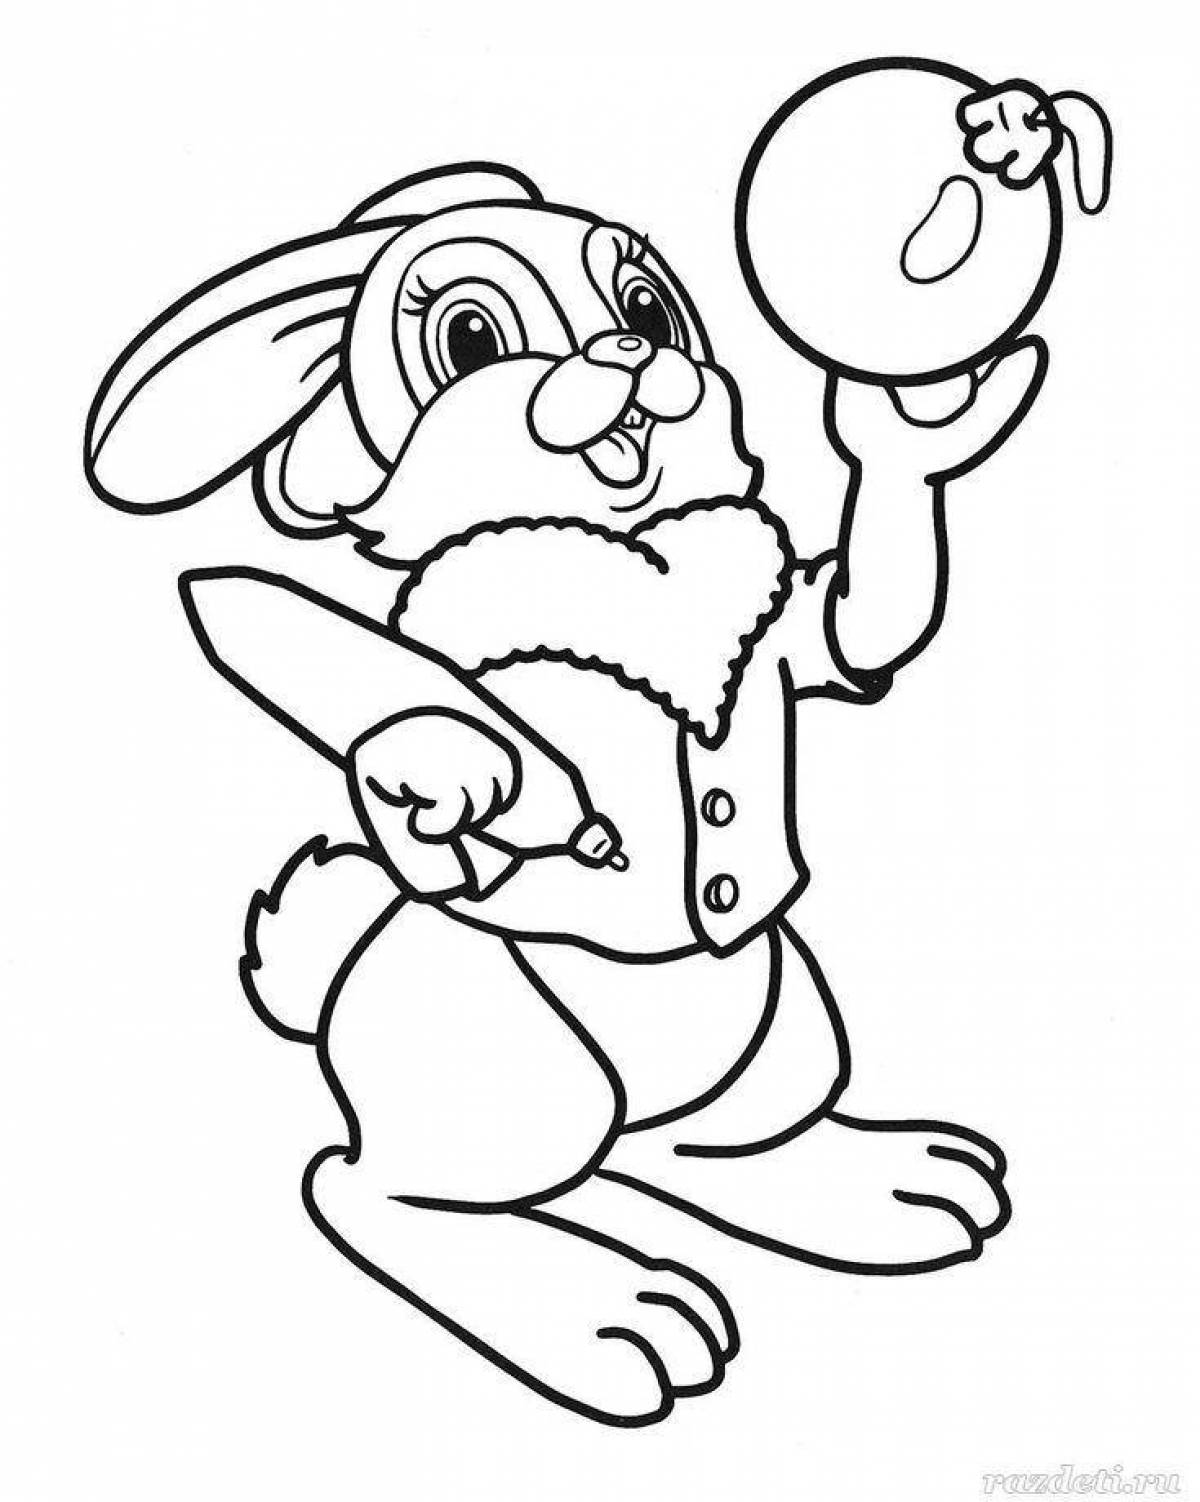 Fun coloring rabbit new year